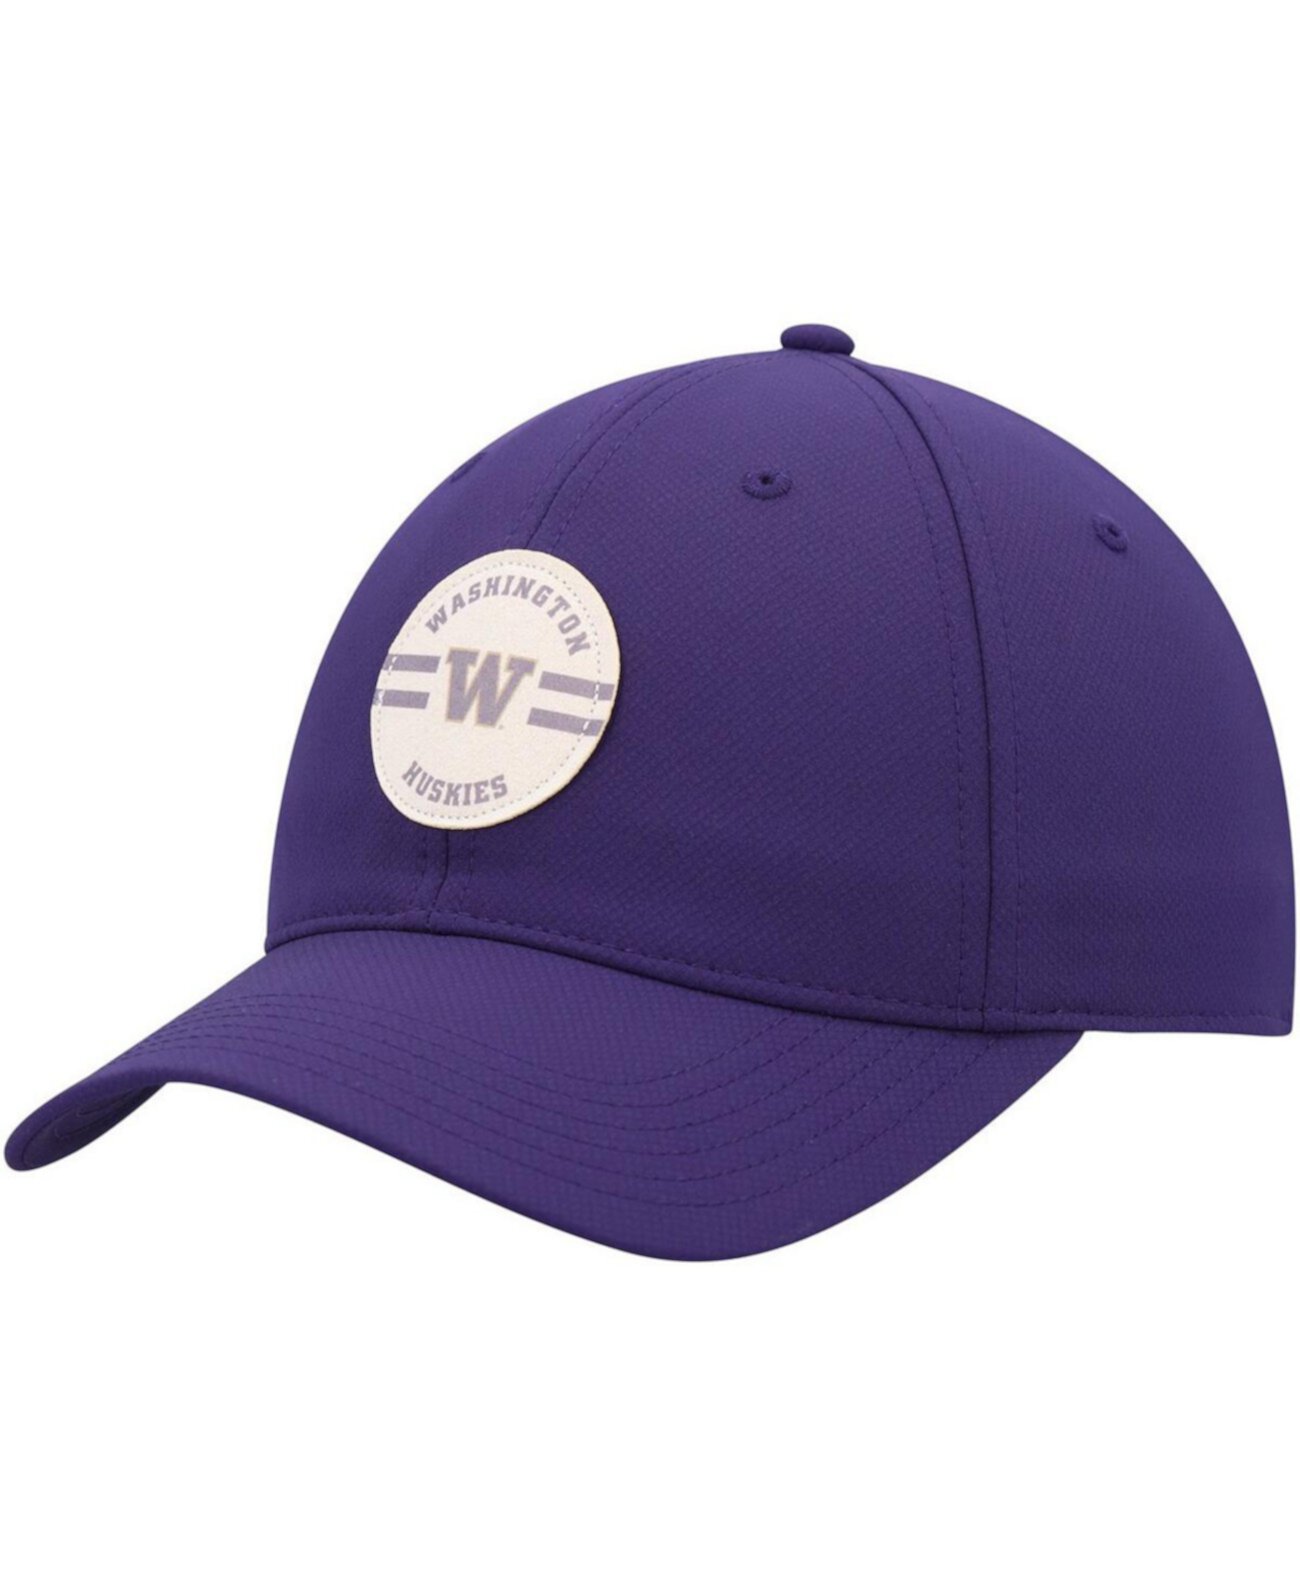 Мужская регулируемая шапка Washington Huskies Frio фиолетового цвета Ahead